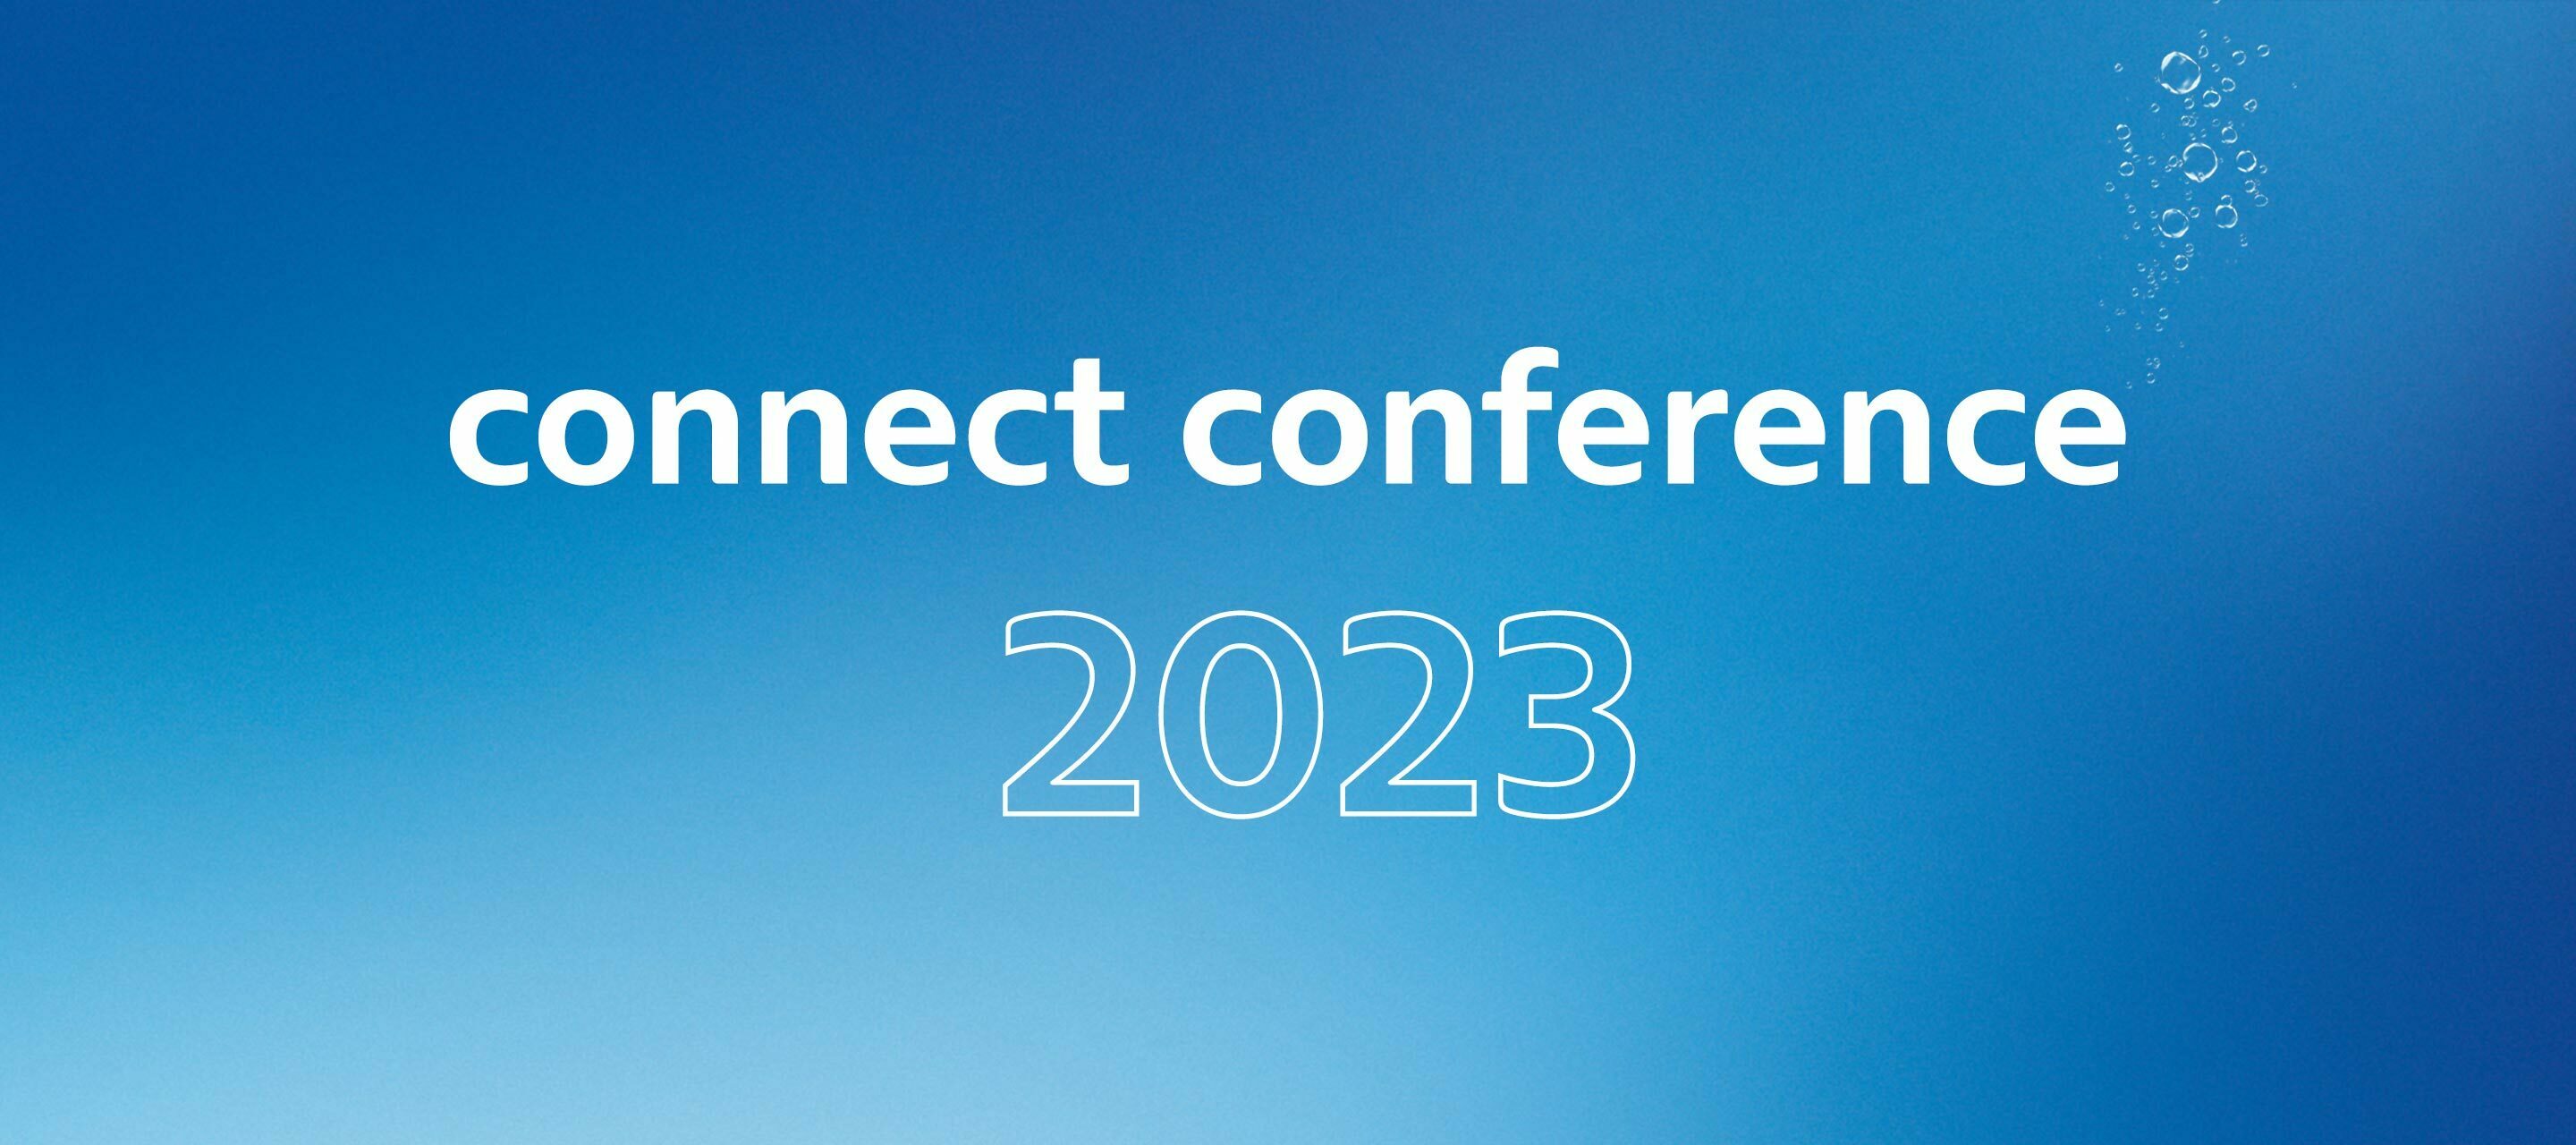 Connect Conference 2023 - Ein kurzer Überblick